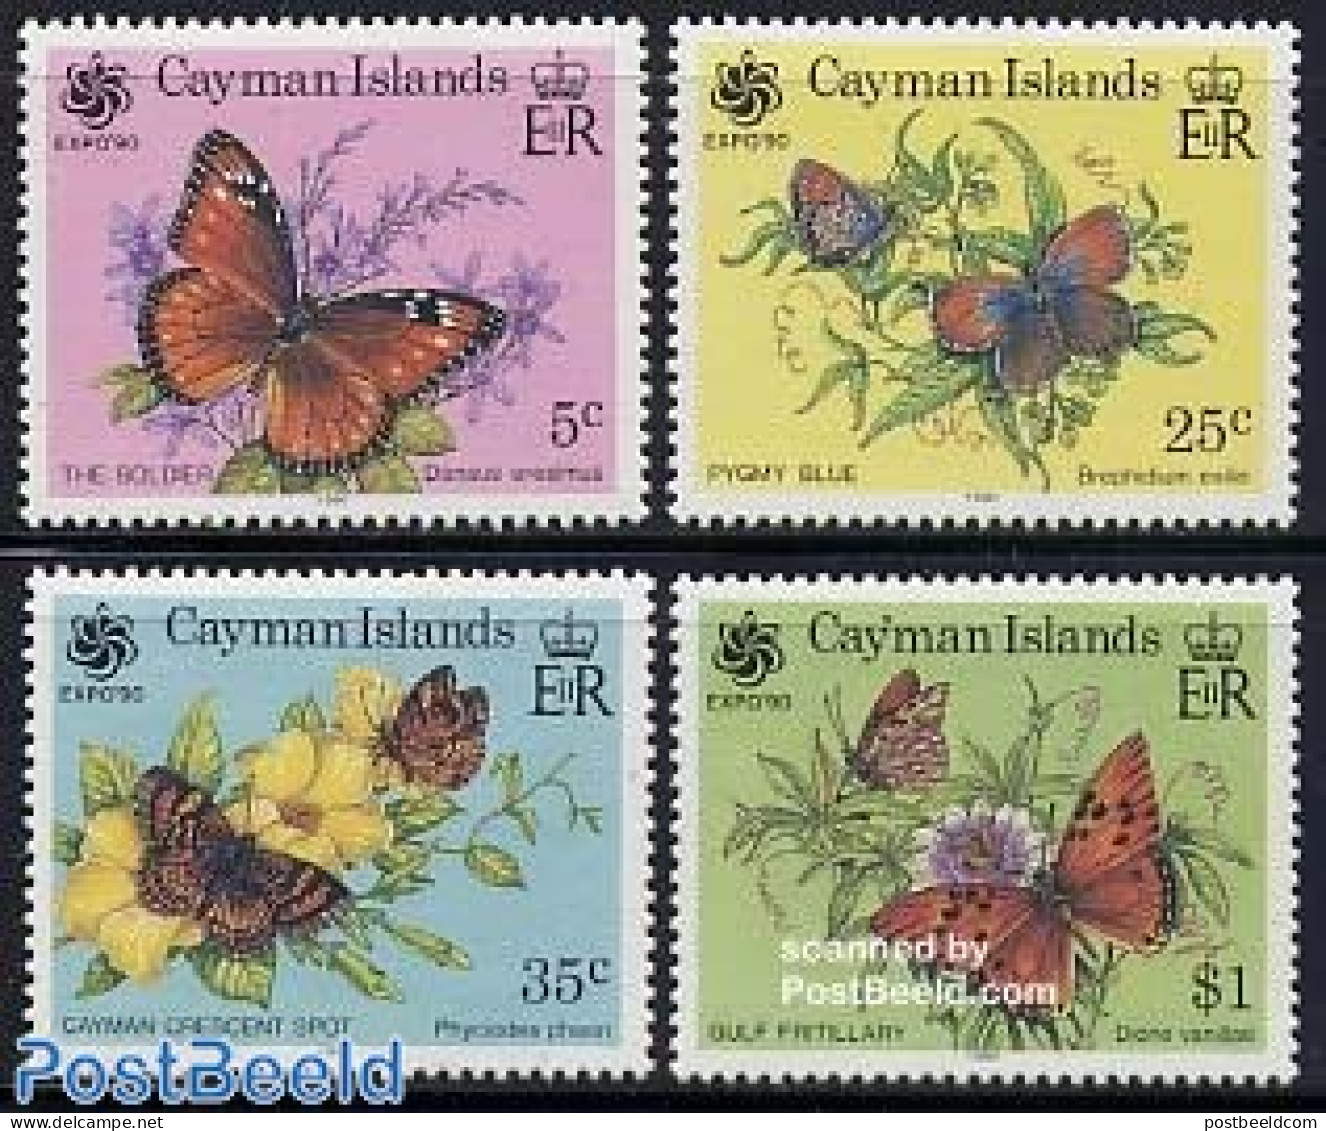 Cayman Islands 1990 Expo, Butterflies 4v, Mint NH, Nature - Butterflies - Cayman Islands